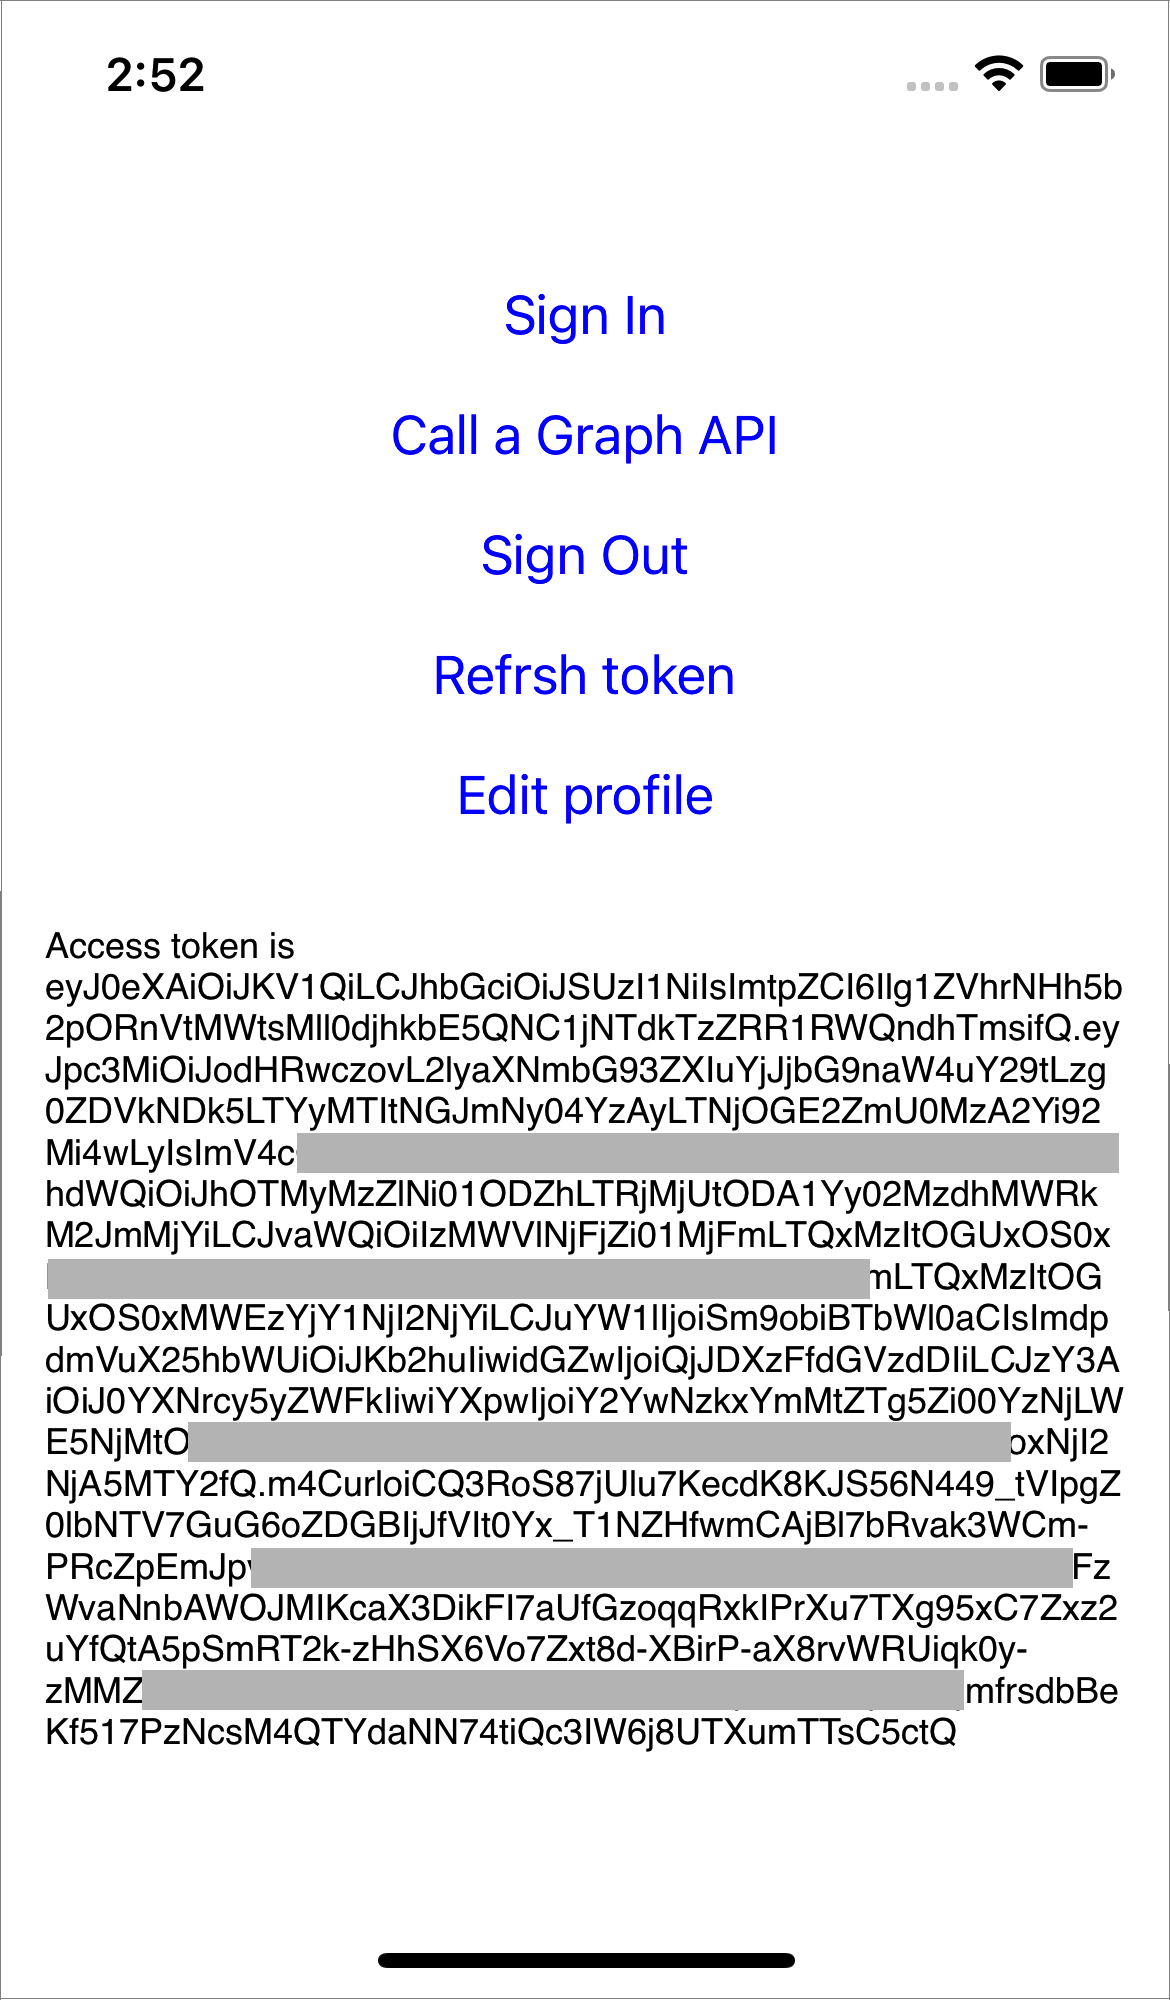 Skärmbild som visar Azure AD B2C-åtkomsttoken och användar-ID.